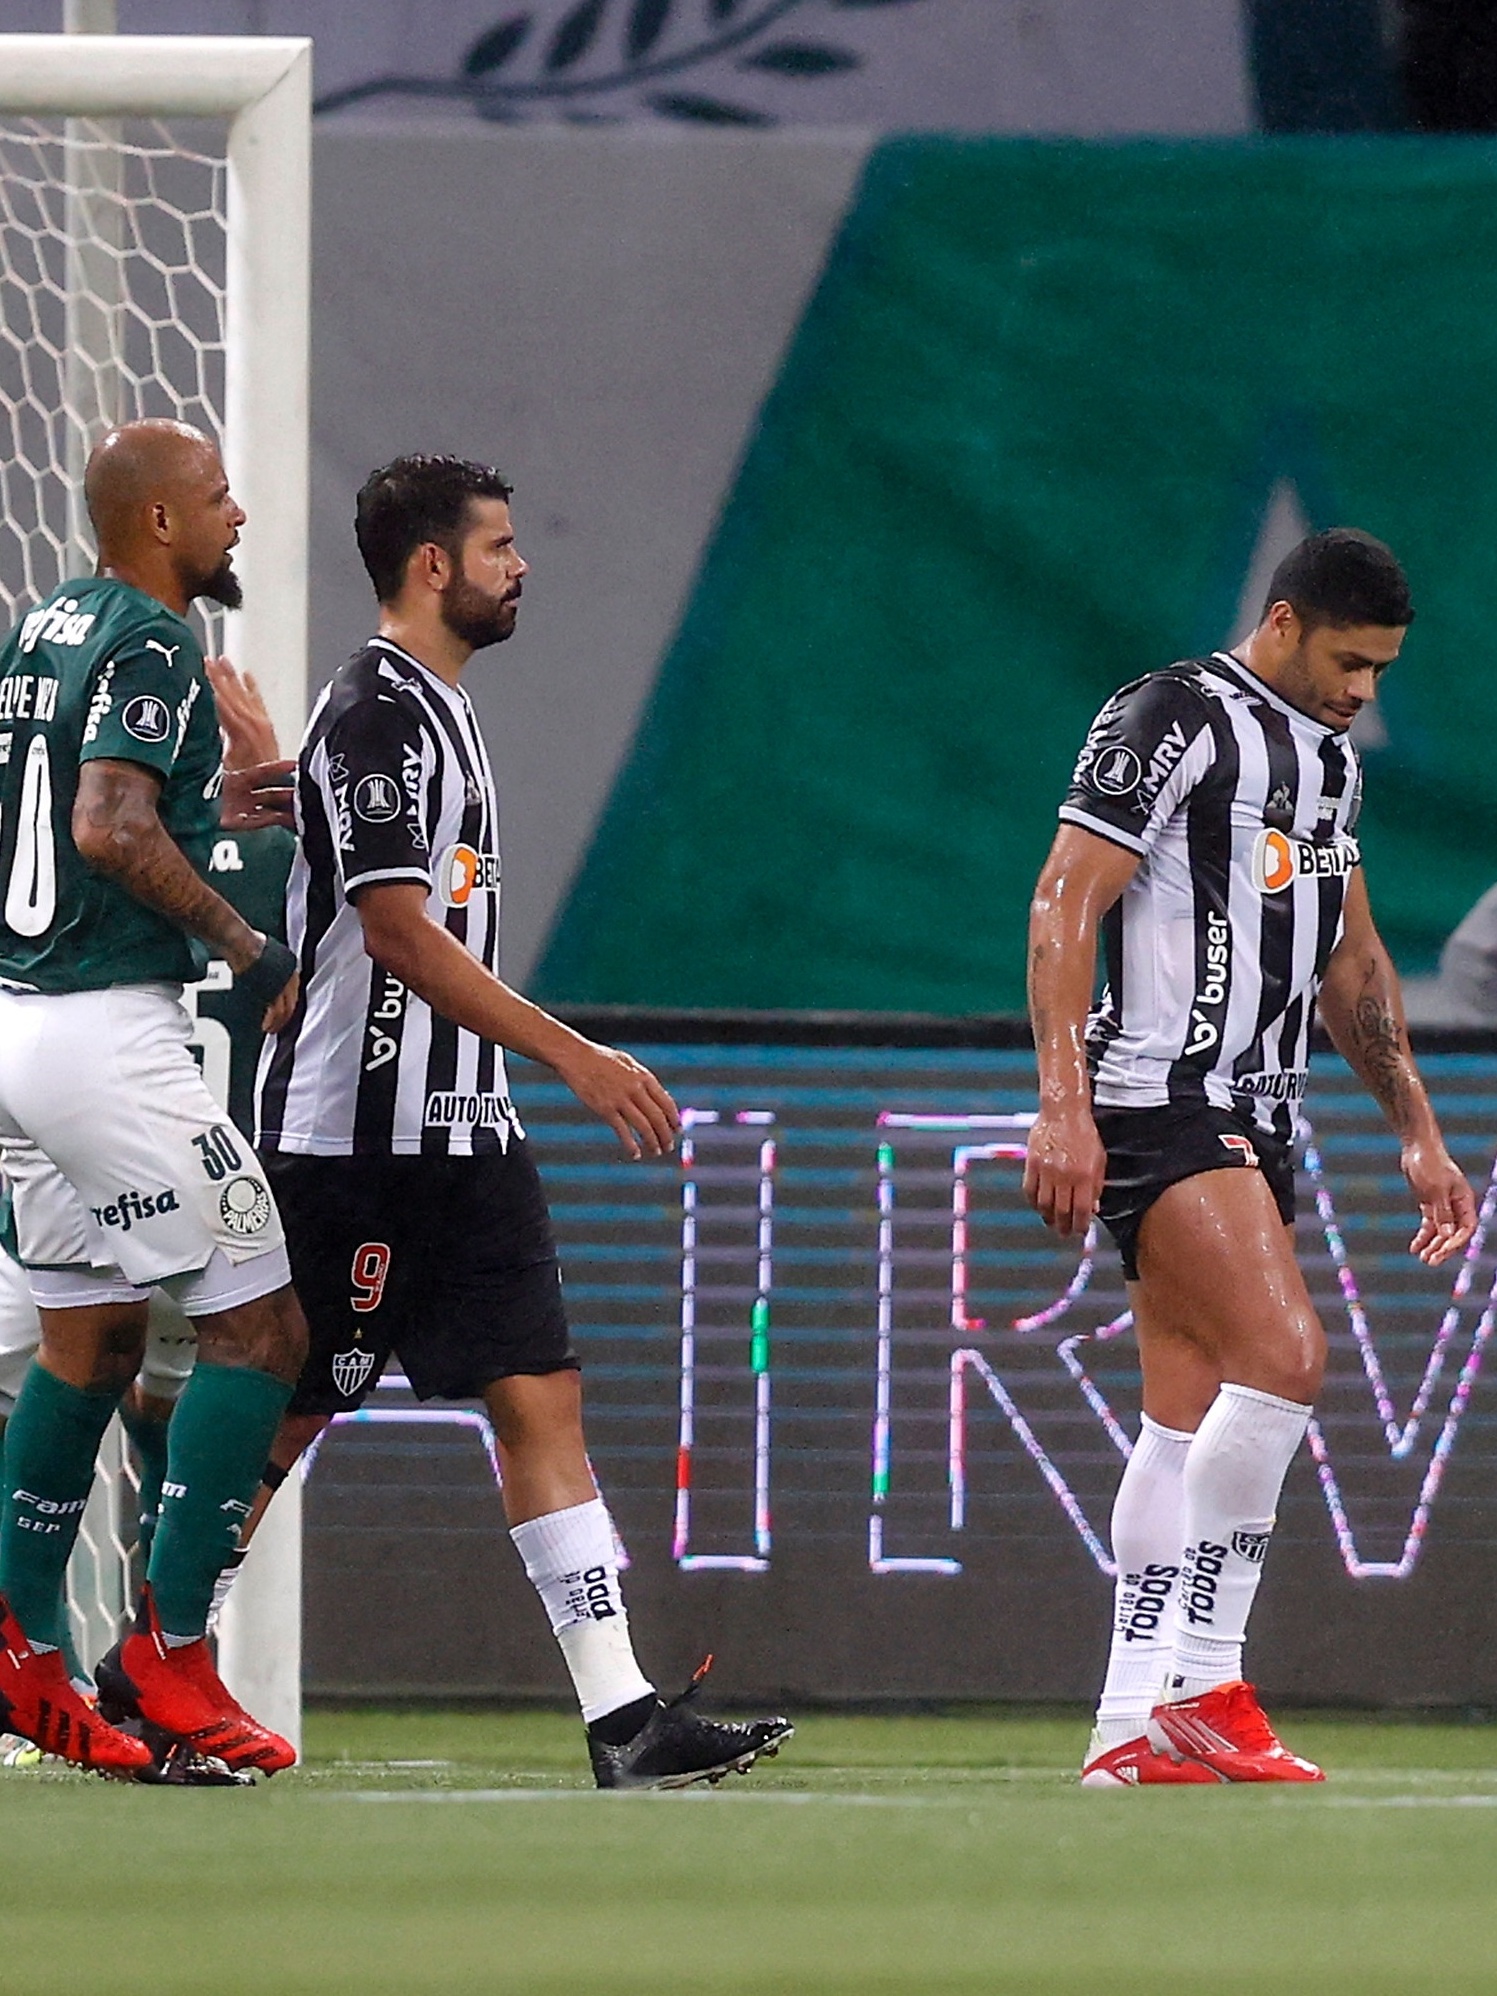 Se Galo e Palmeiras repetirem últimos jogos, decisão será nos pênaltis